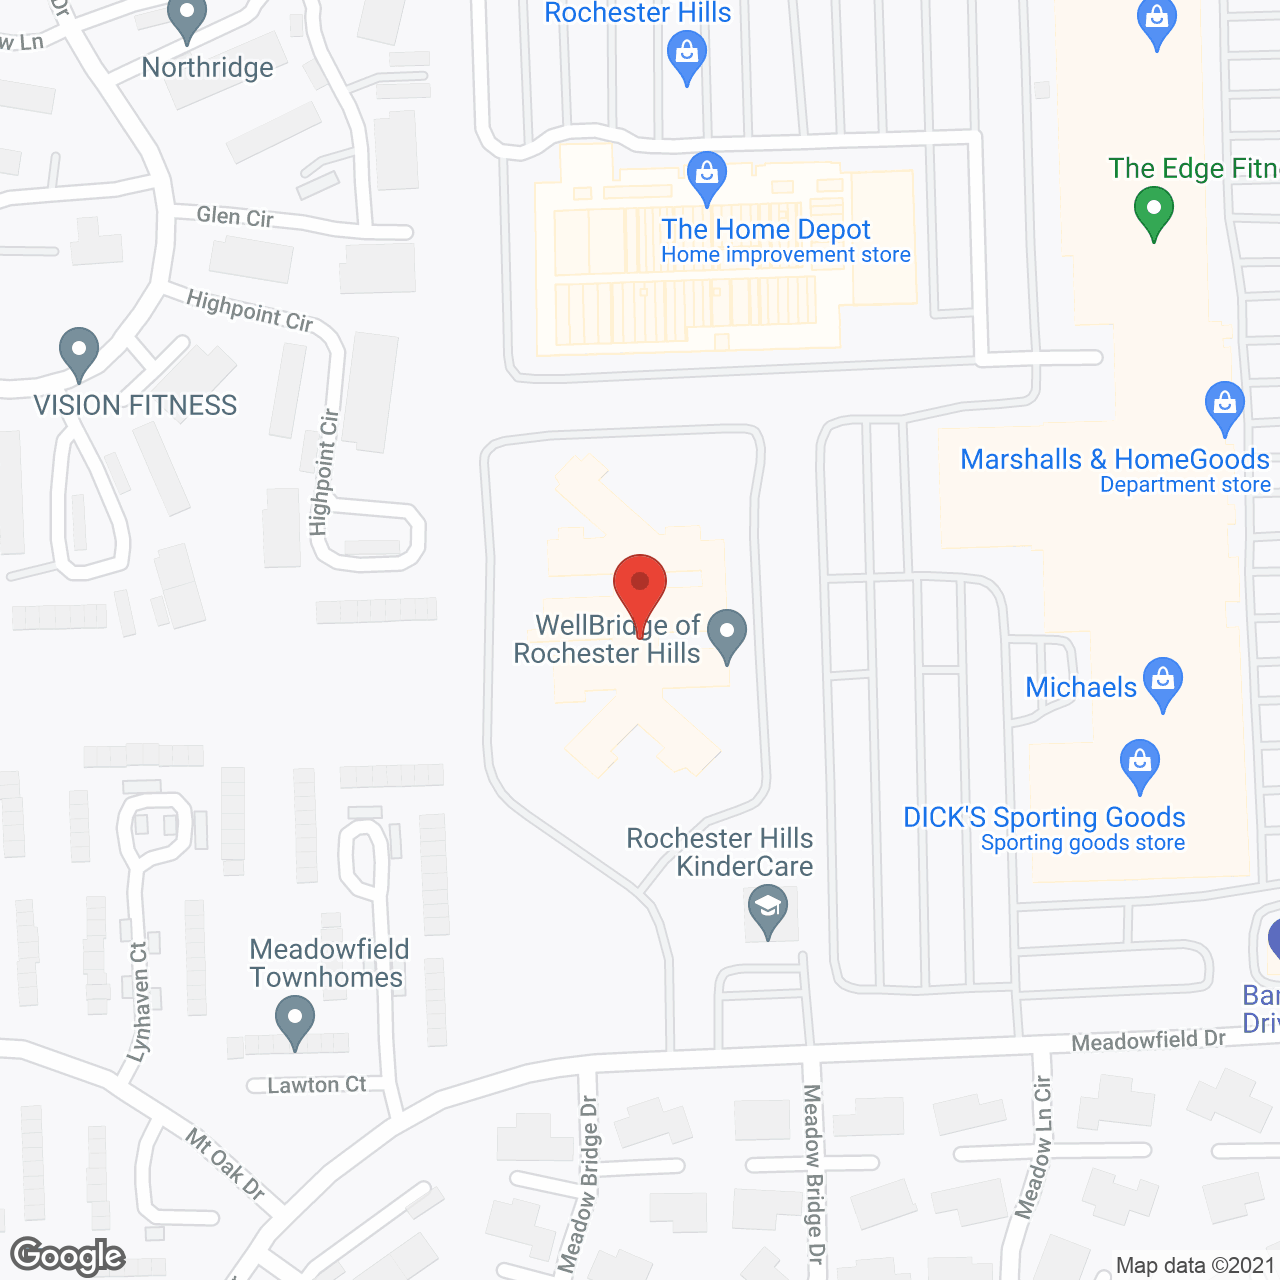 Wellbridge of Rochester Hills in google map